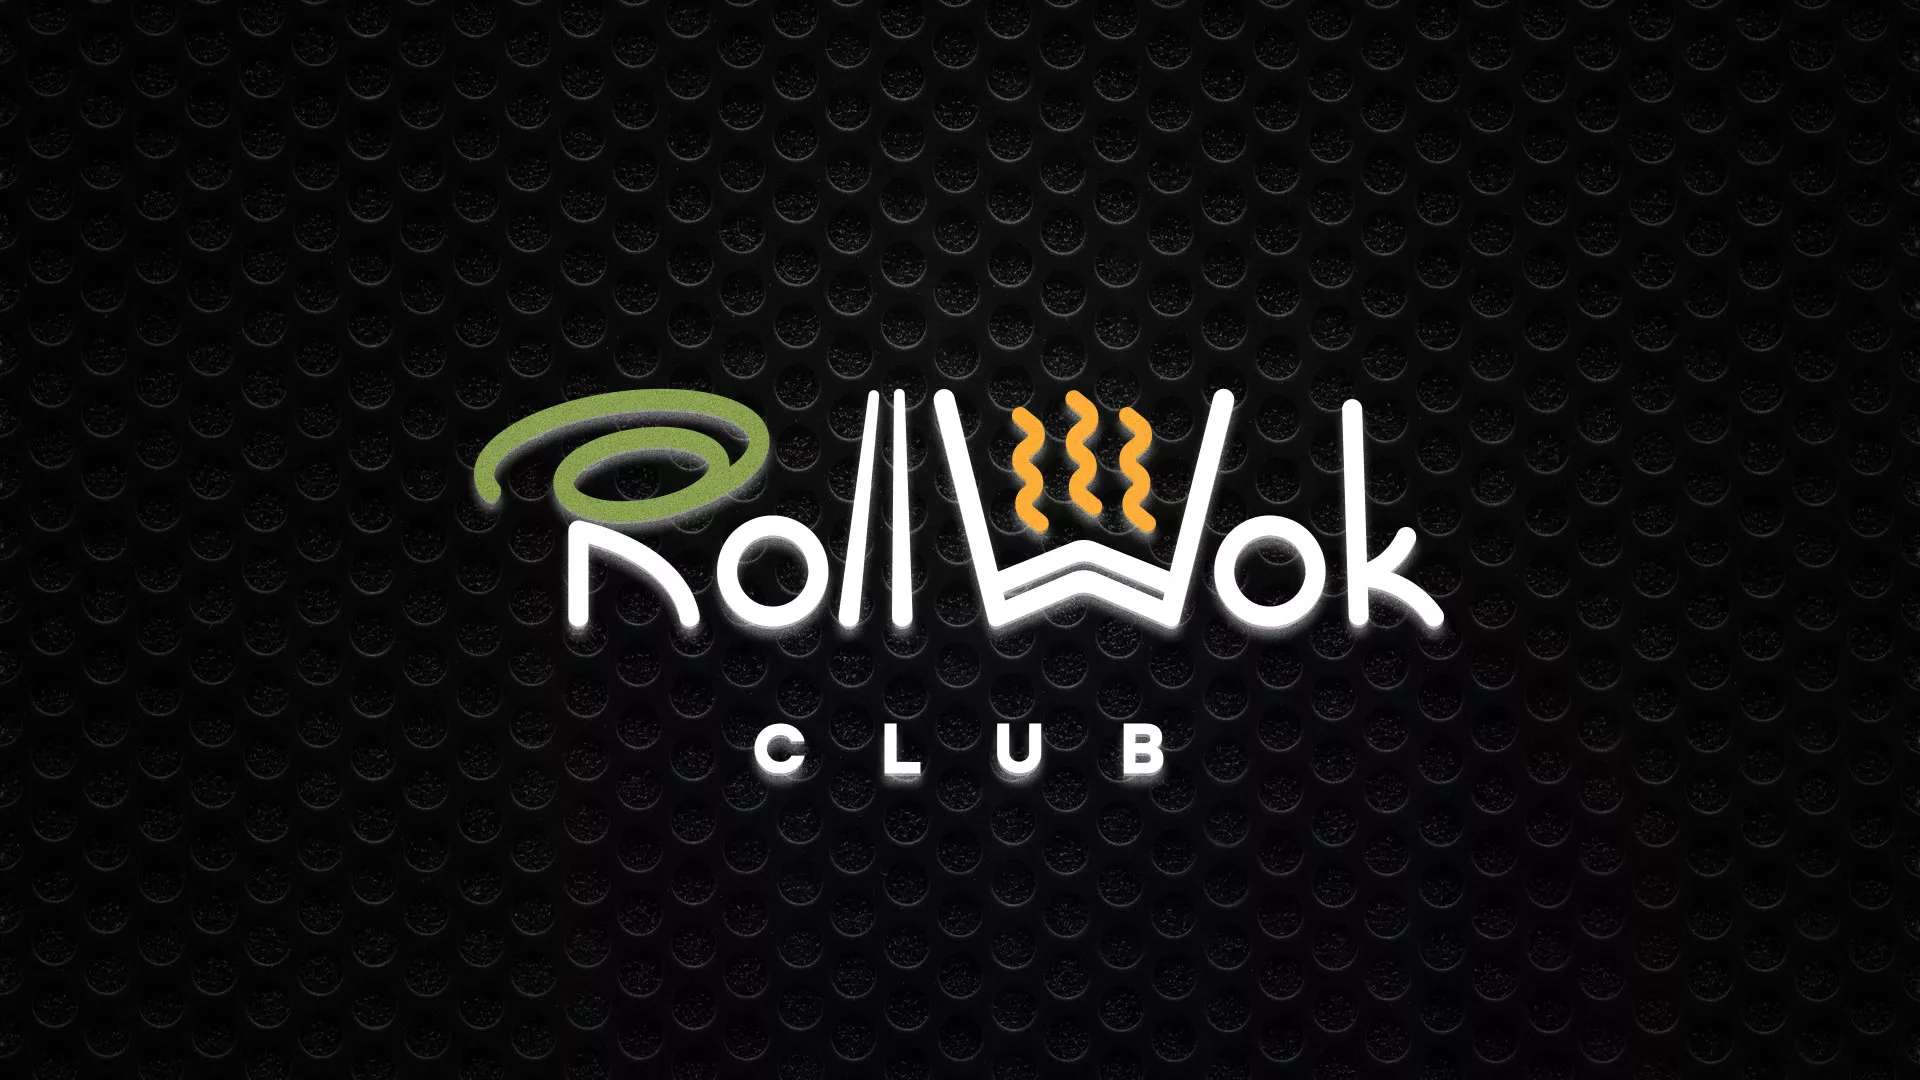 Брендирование торговых точек суши-бара «Roll Wok Club» в Павловске